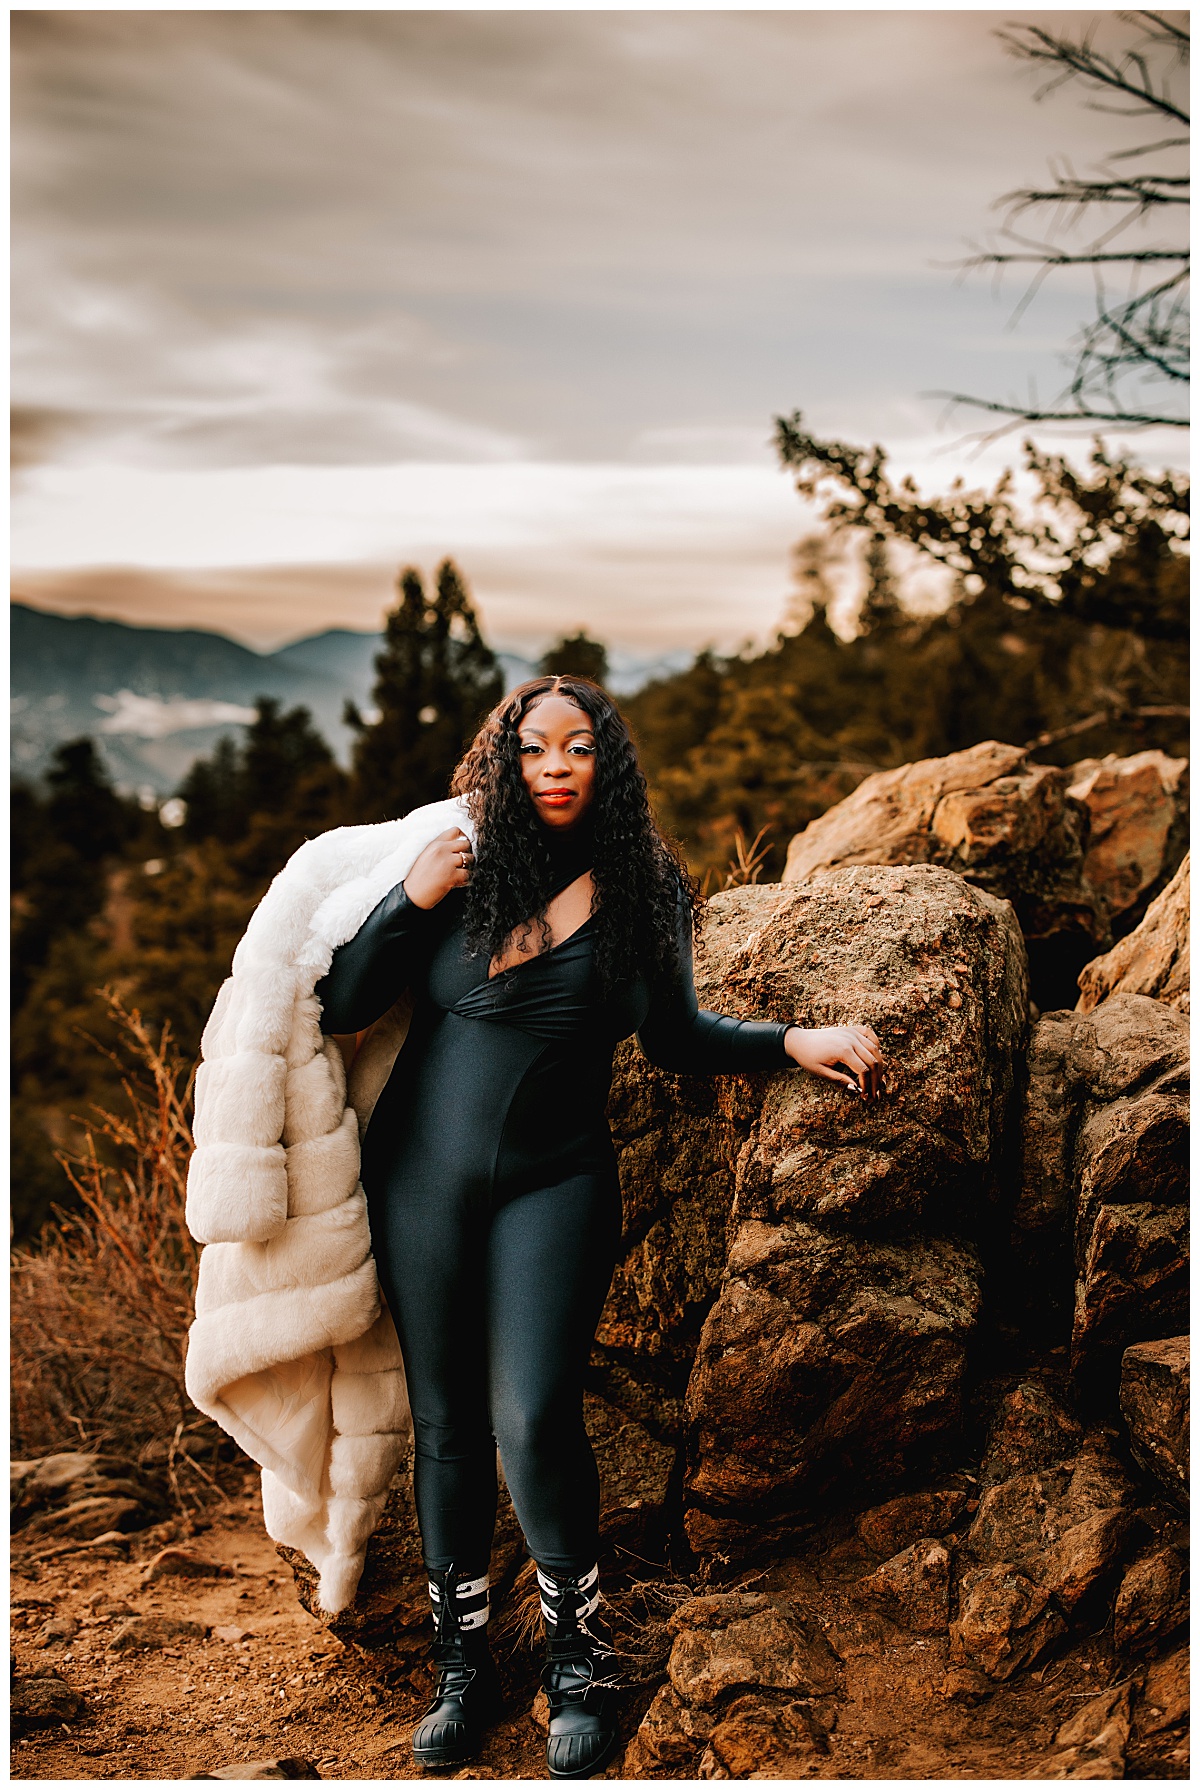 Samanda leans on a rock with fur coat over her shoulder